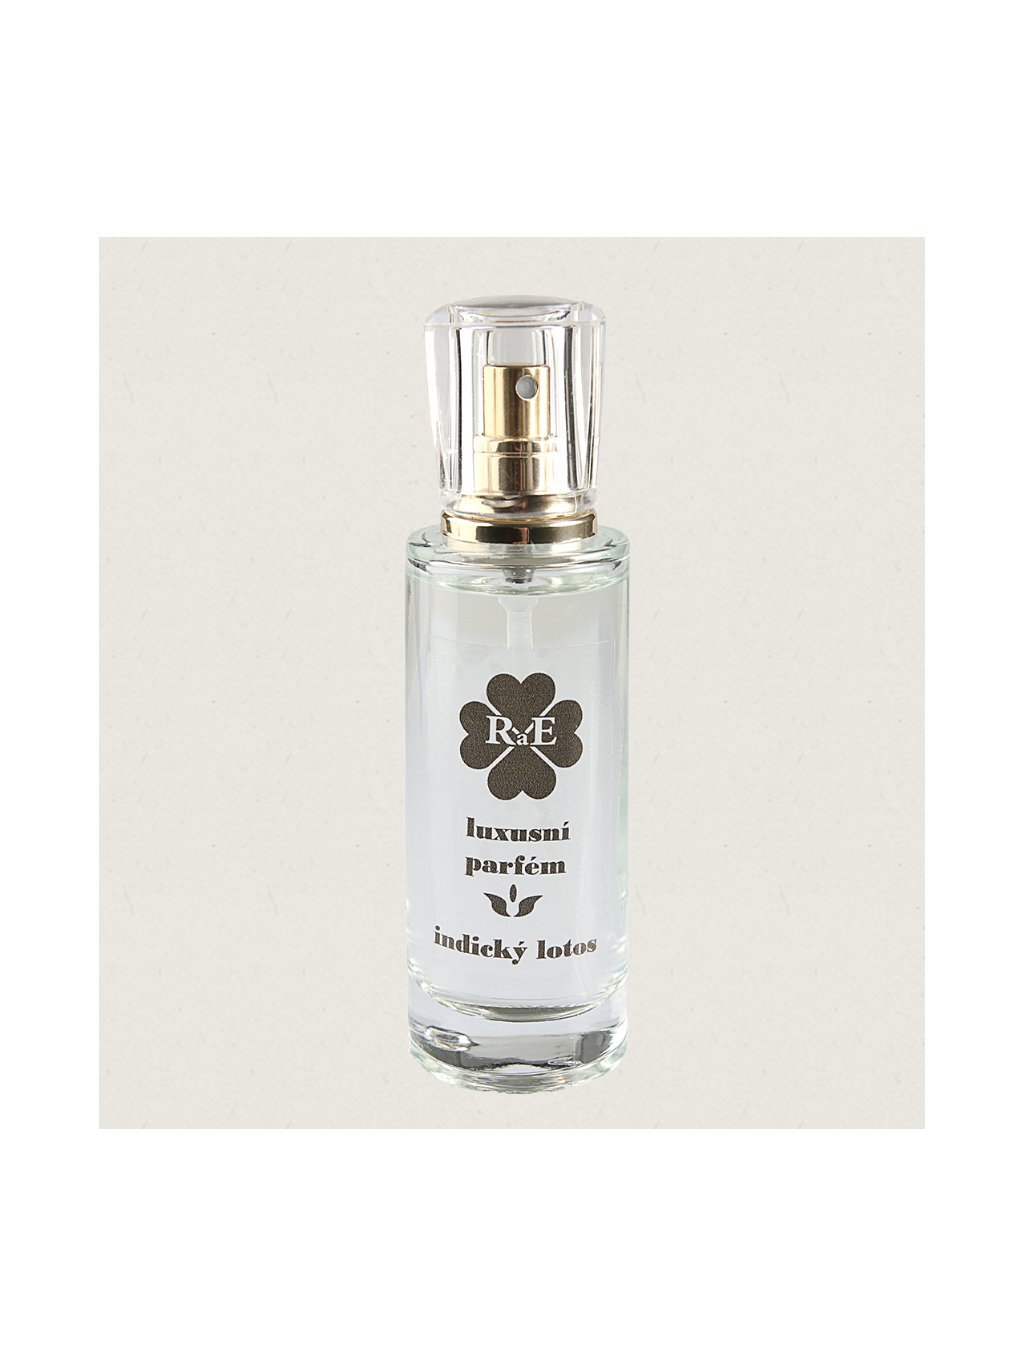 RaE Luxusní tekutý parfém ve skle - Indický lotos (30 ml)